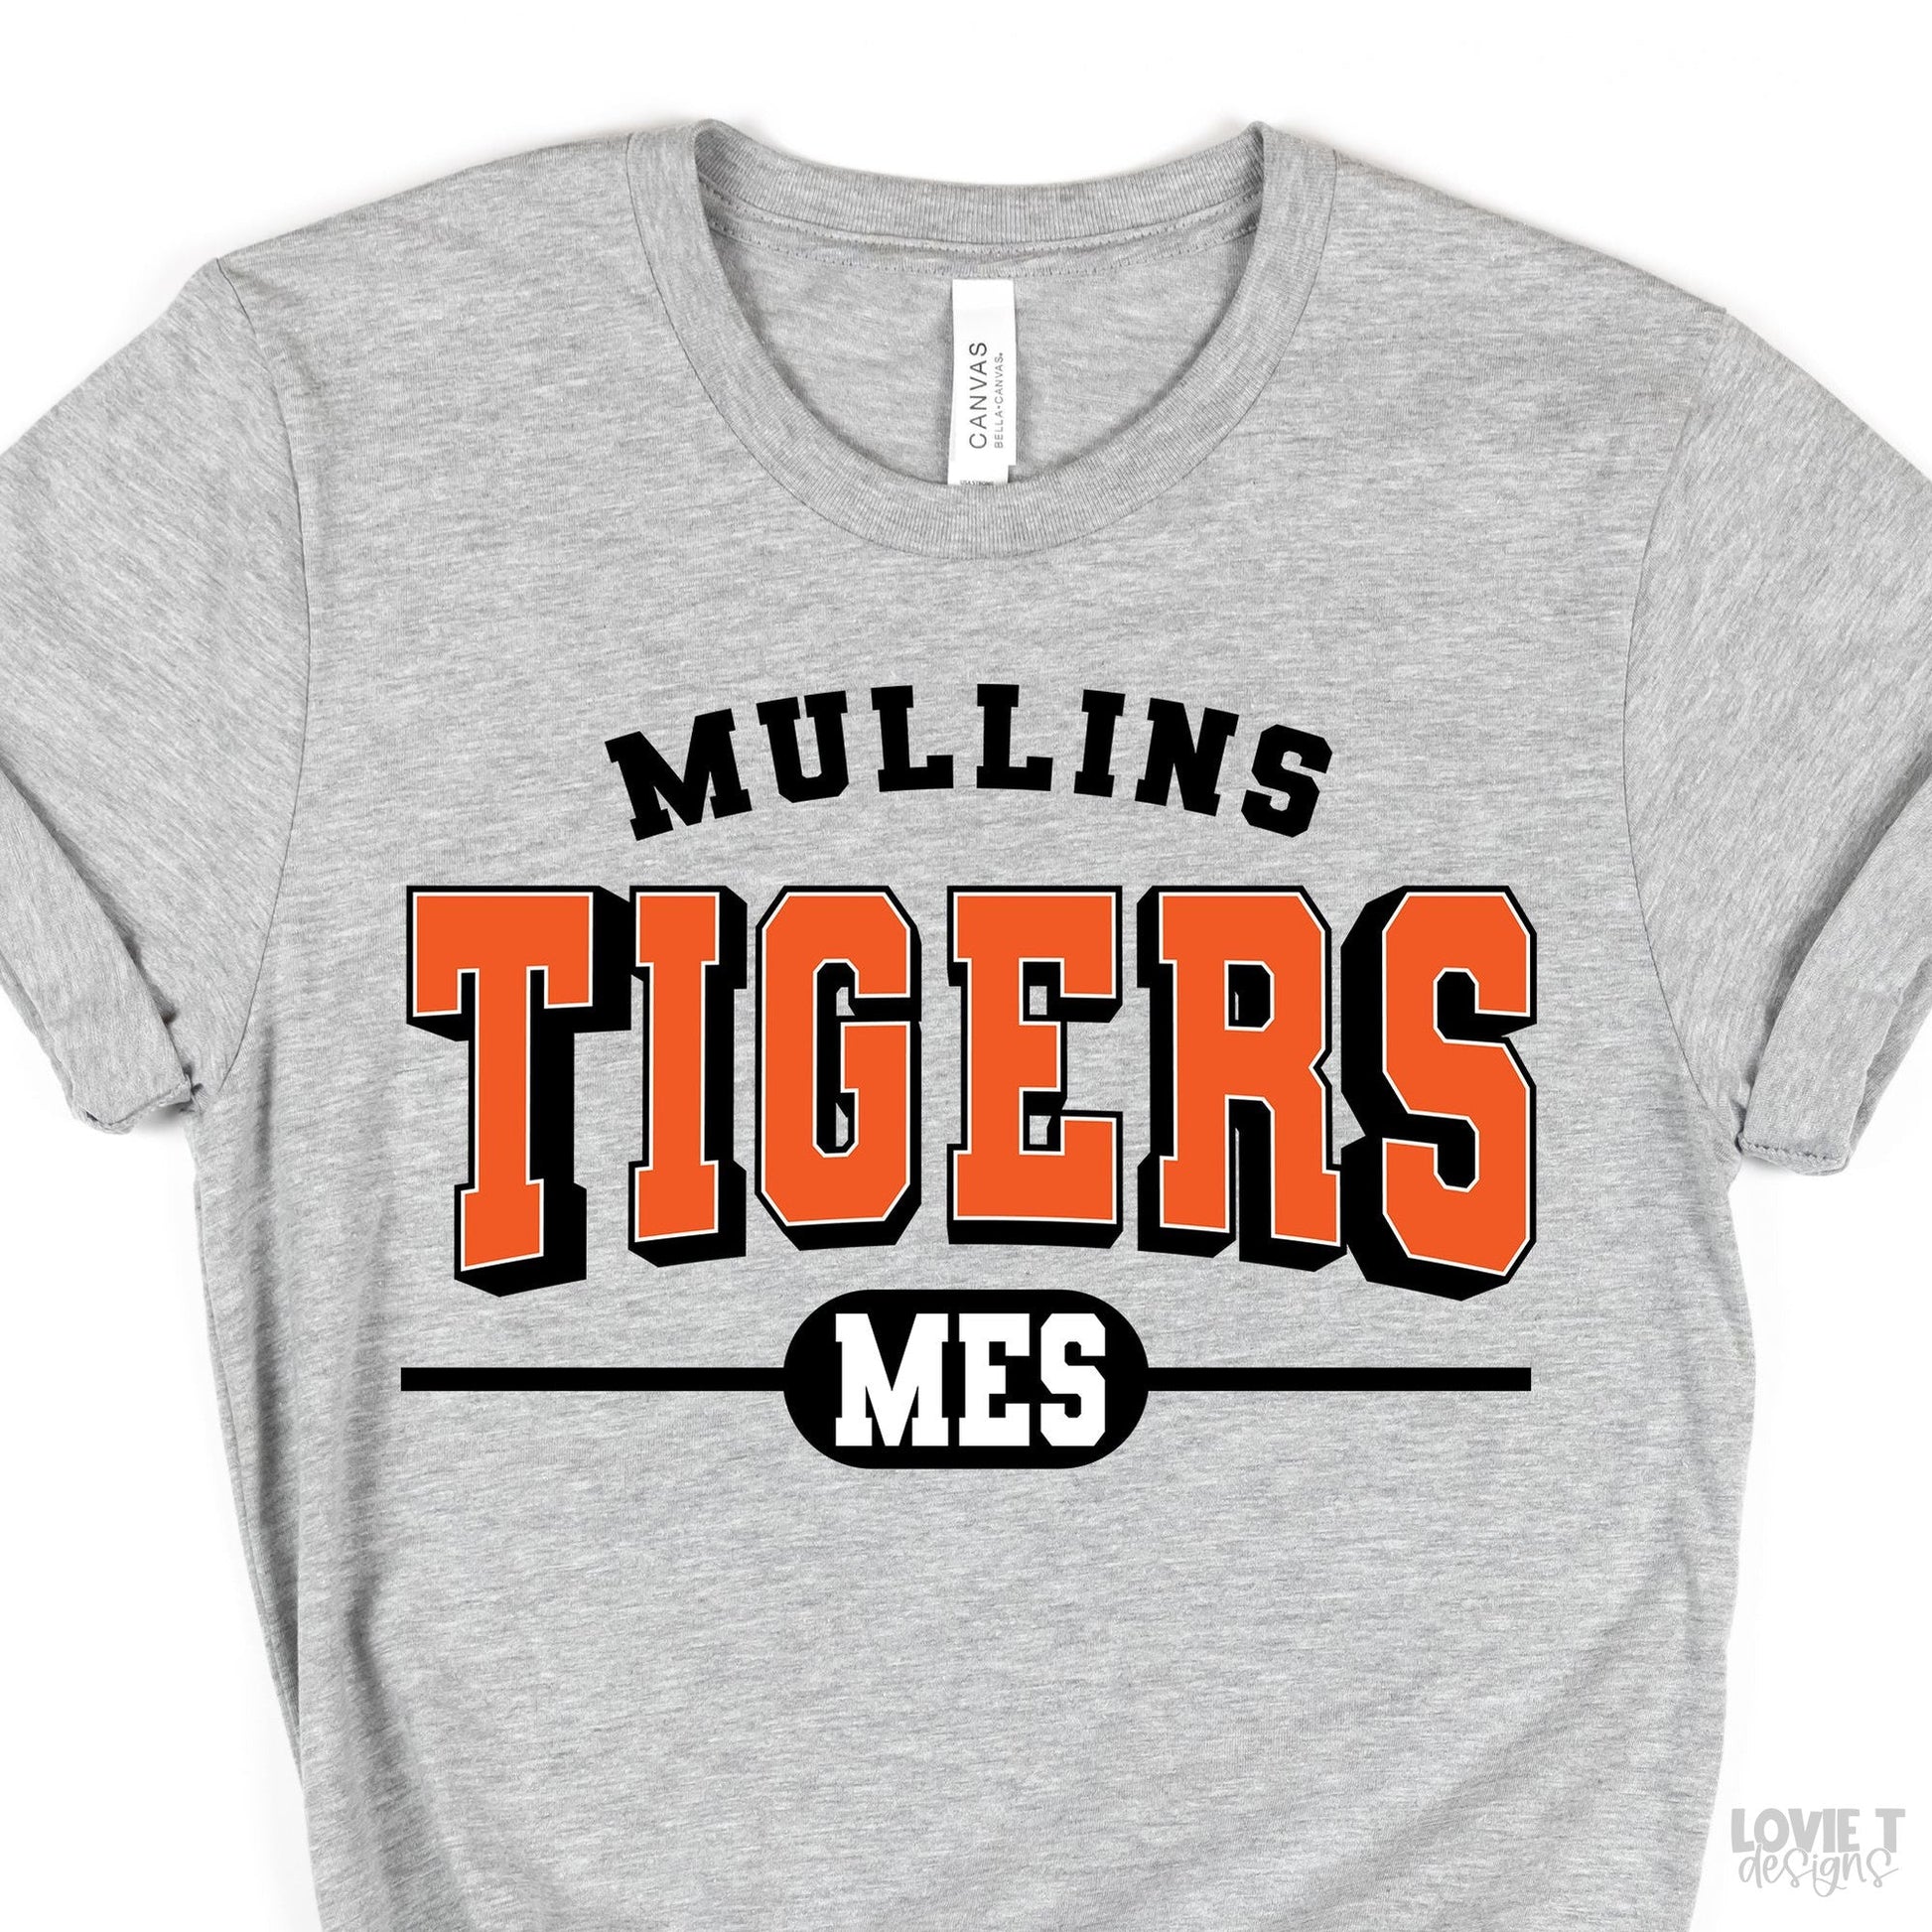 Mullins Tigers